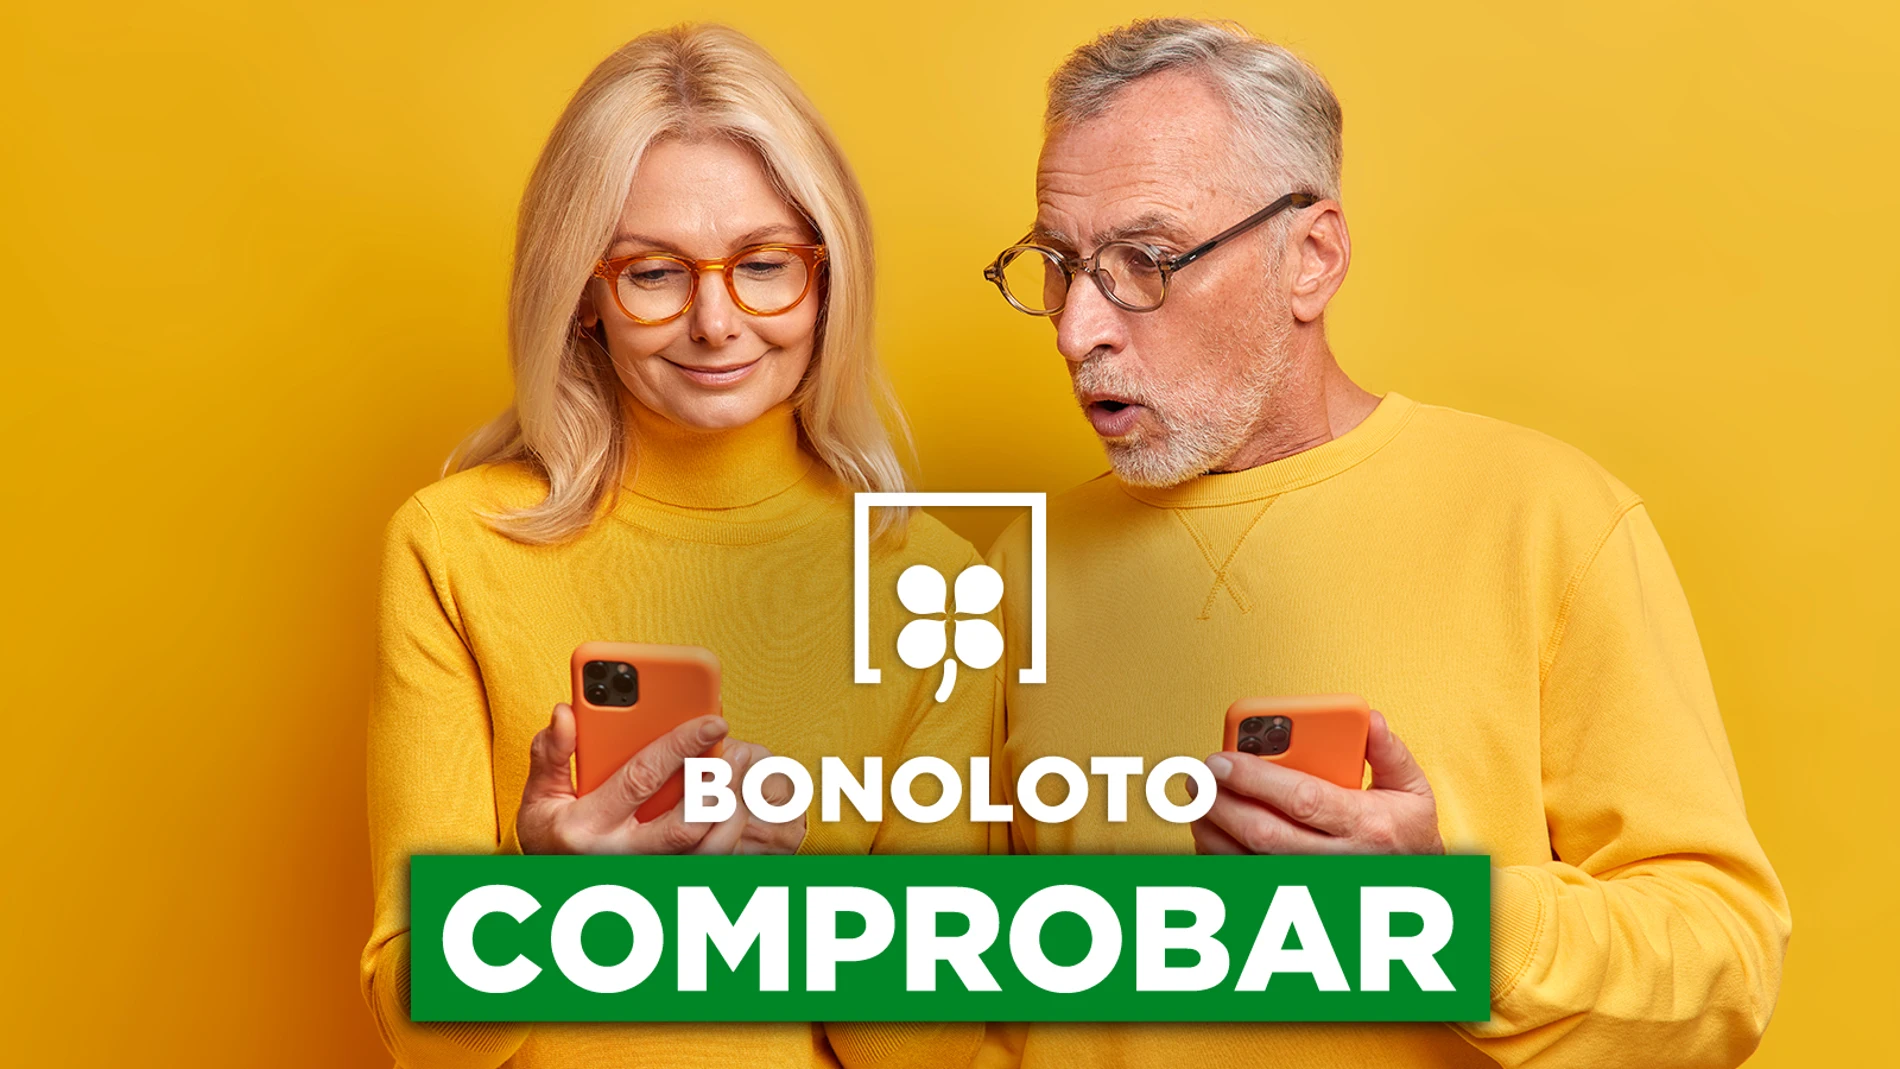 Bonoloto: comprobar hoy, viernes 16 de diciembre de 2022